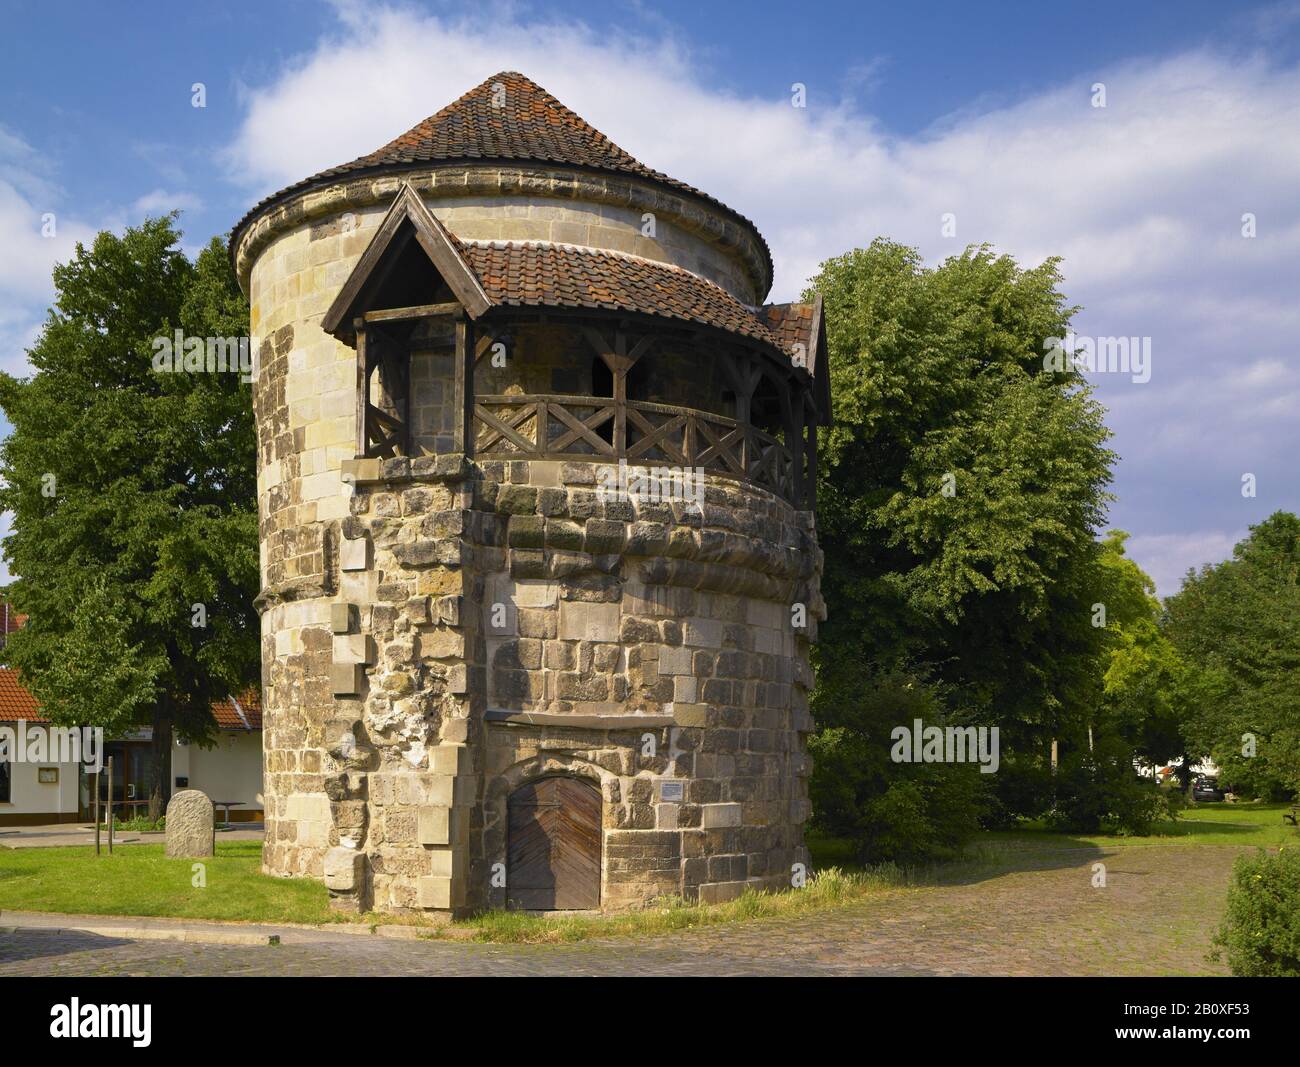 Wassertorturm, parte delle antiche fortificazioni della città di Halberstadt, Sassonia-Anhalt, Germania, Foto Stock